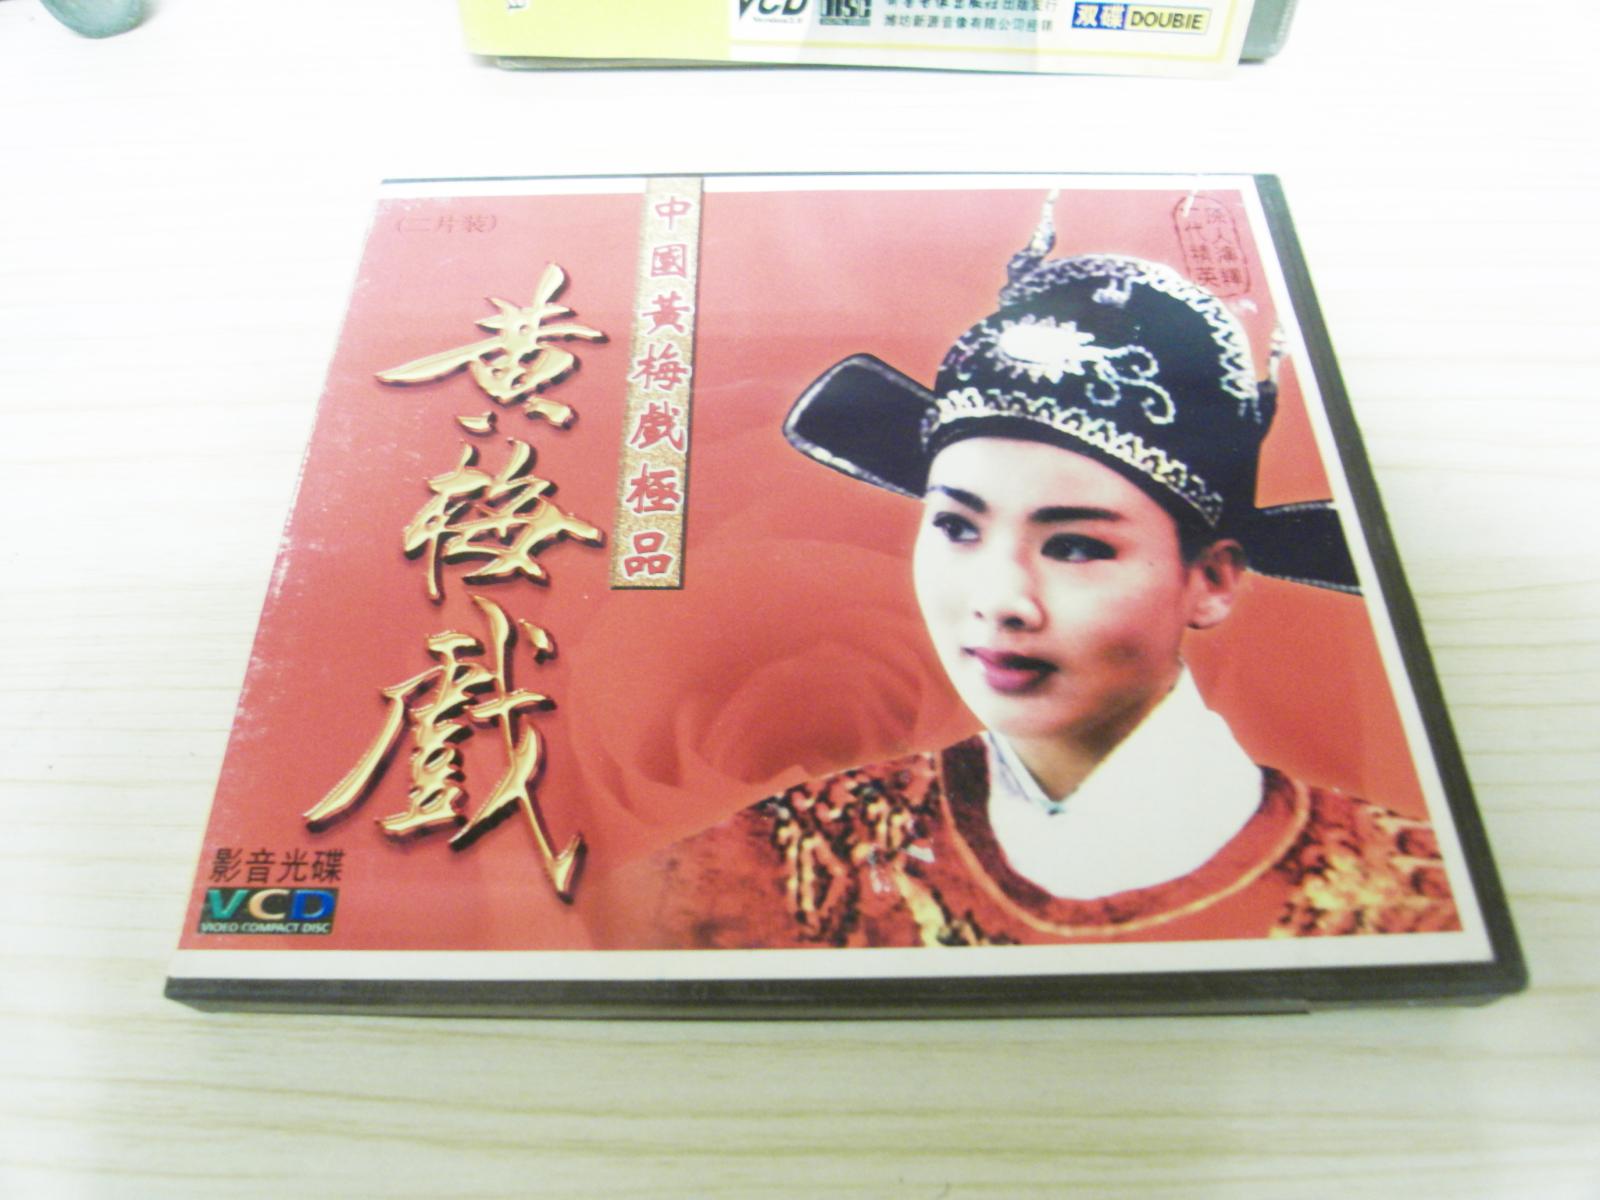 VCD戏曲光盘《中国黄梅戏极品》两碟装。主演；韩再芬，马兰，黄新德，张辉，吴亚玲